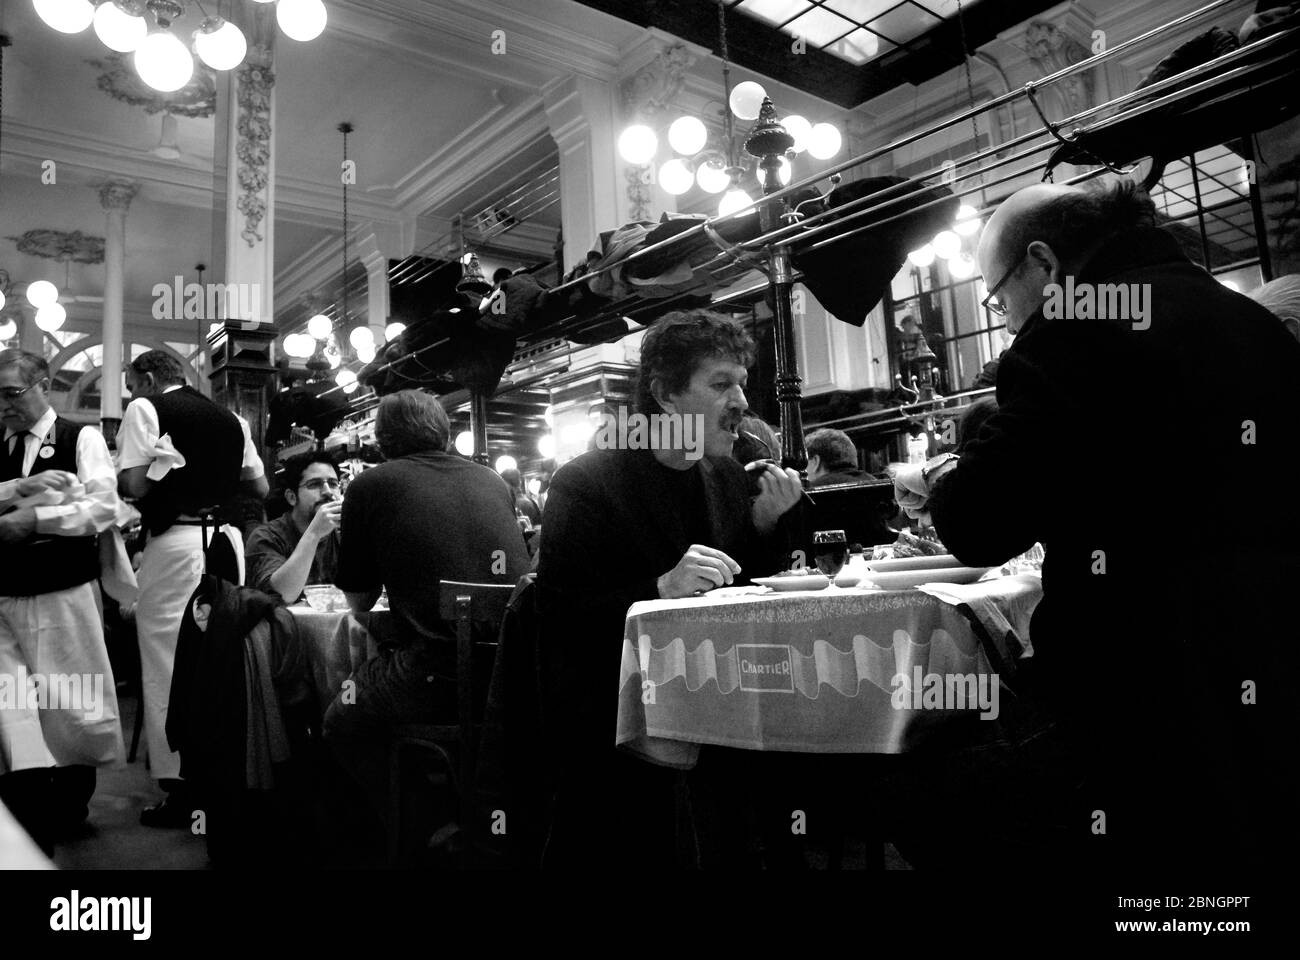 Bouillon Chartier, Paris Stock Photo